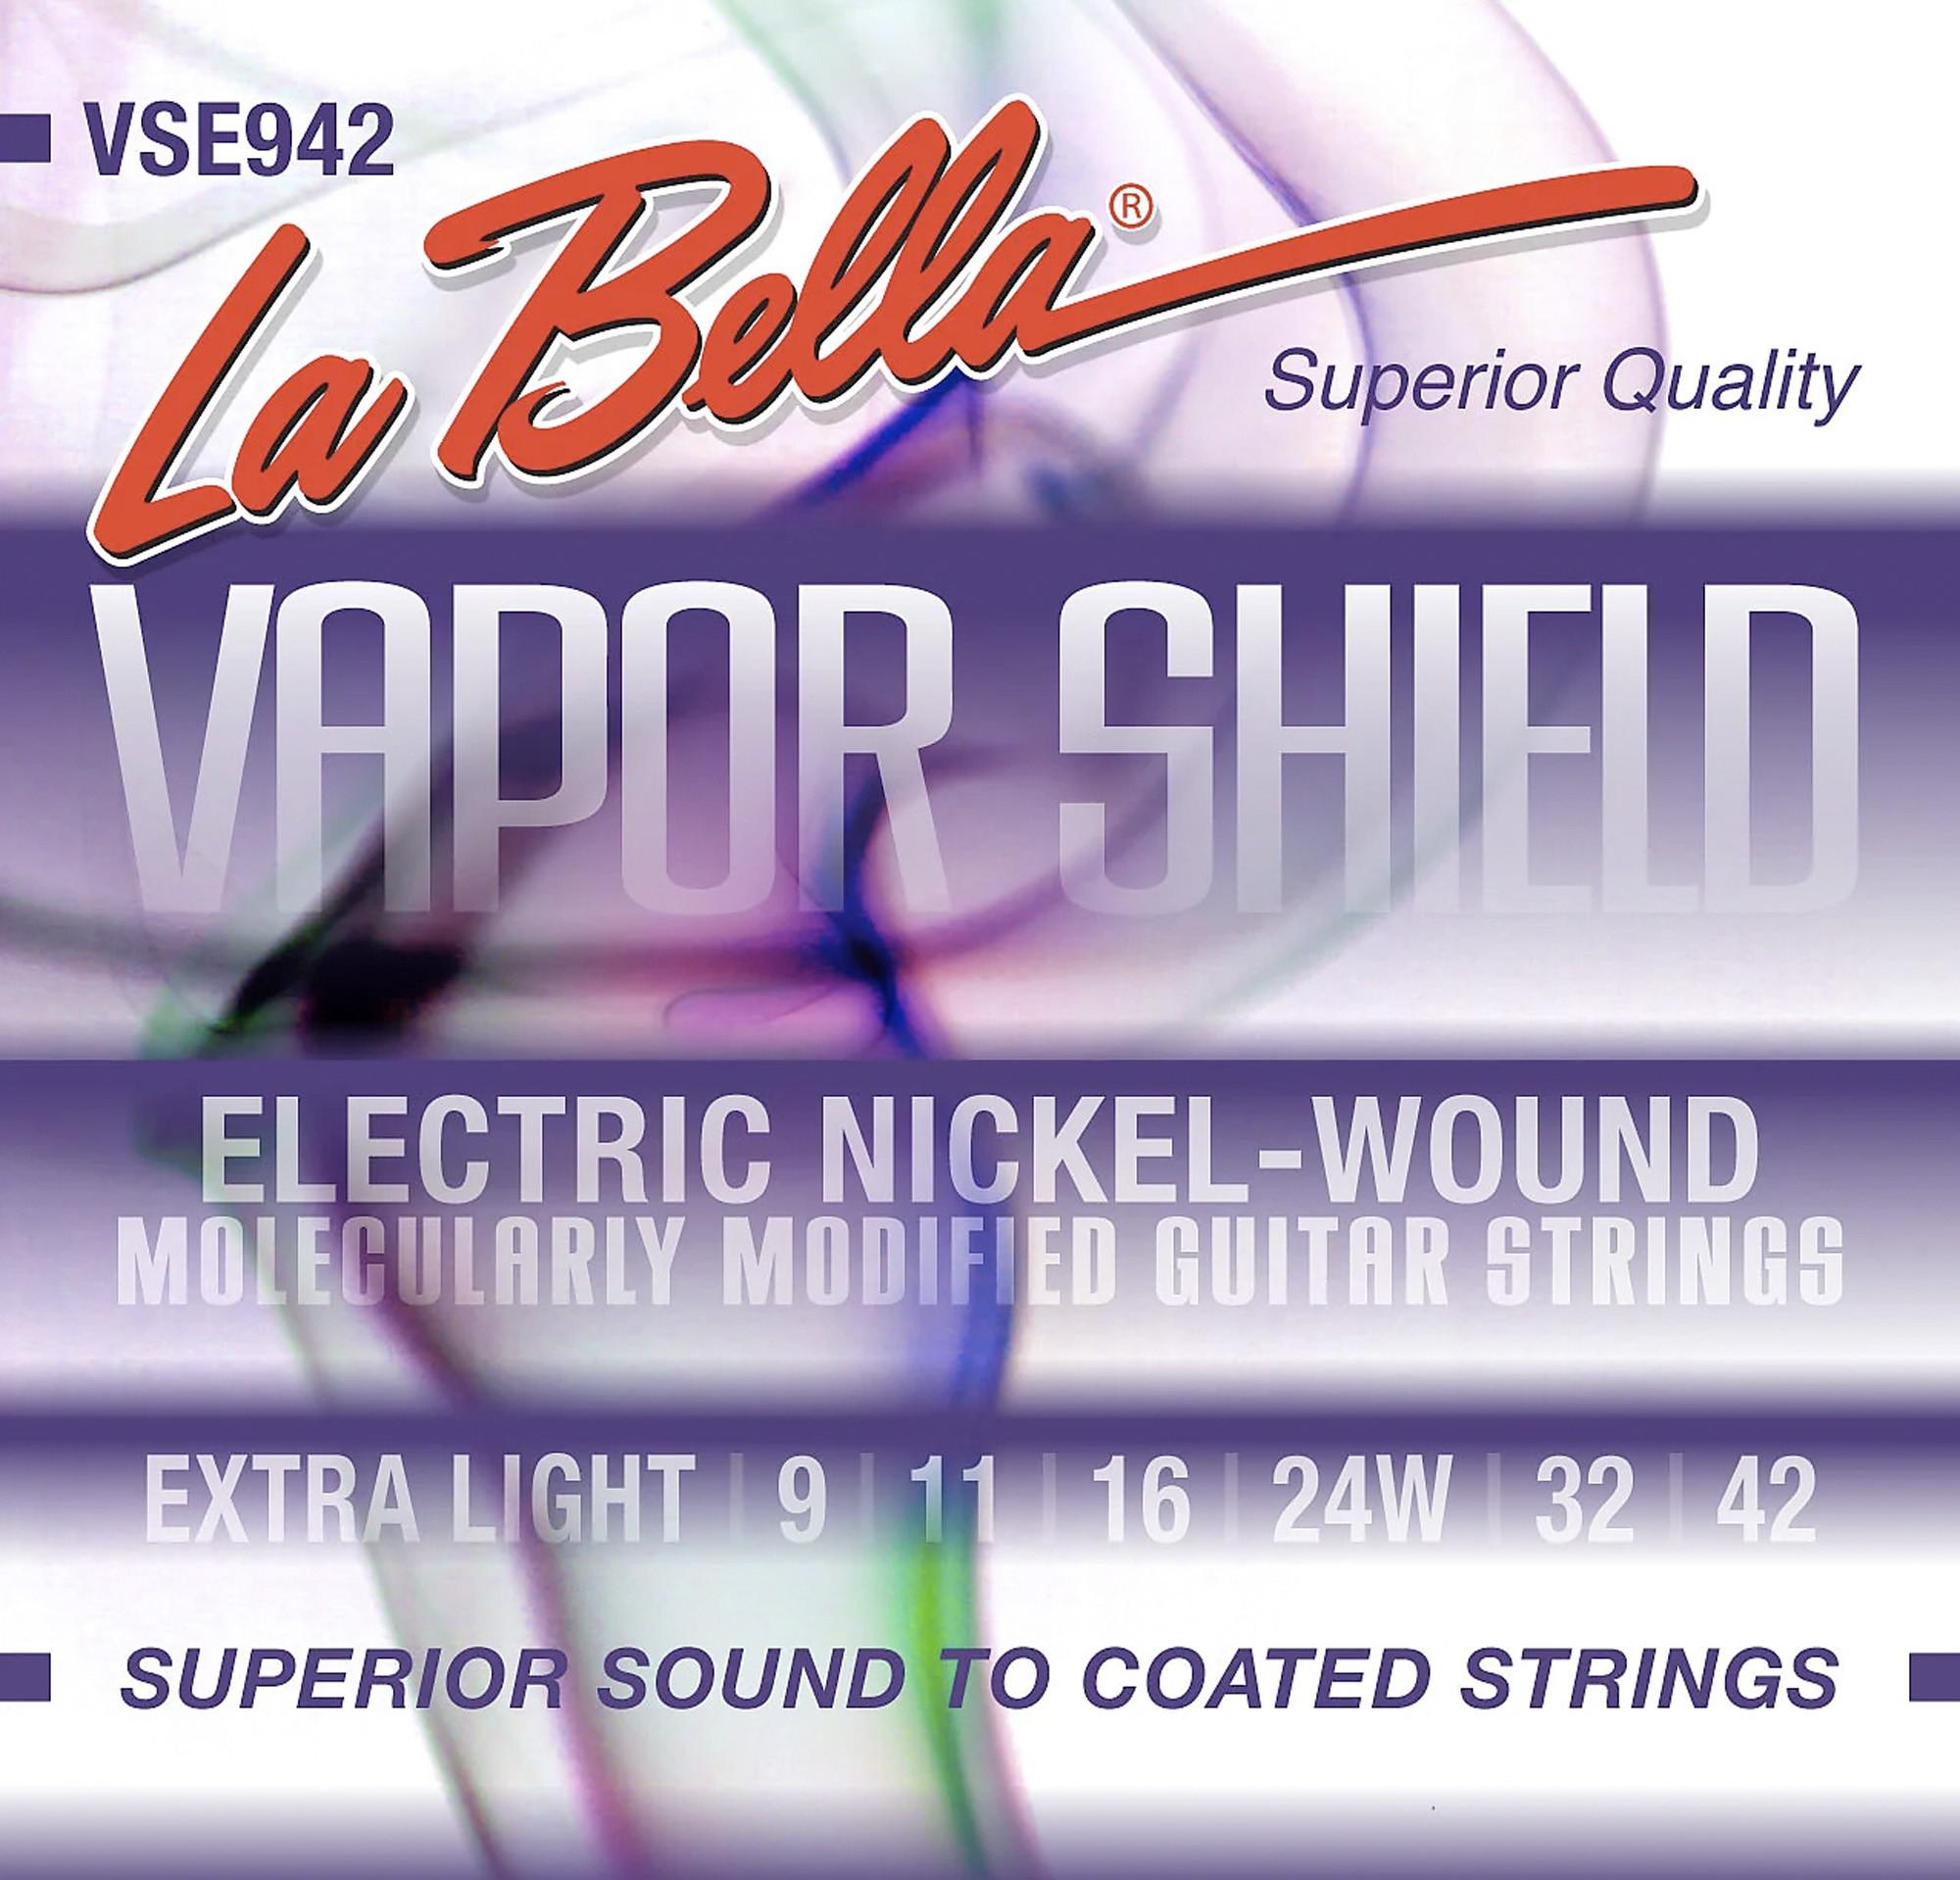 La Bella - Encordado Vapor Shield para Guitarra Eléctrica, Extra Light 9-42 Mod.VSE942_159